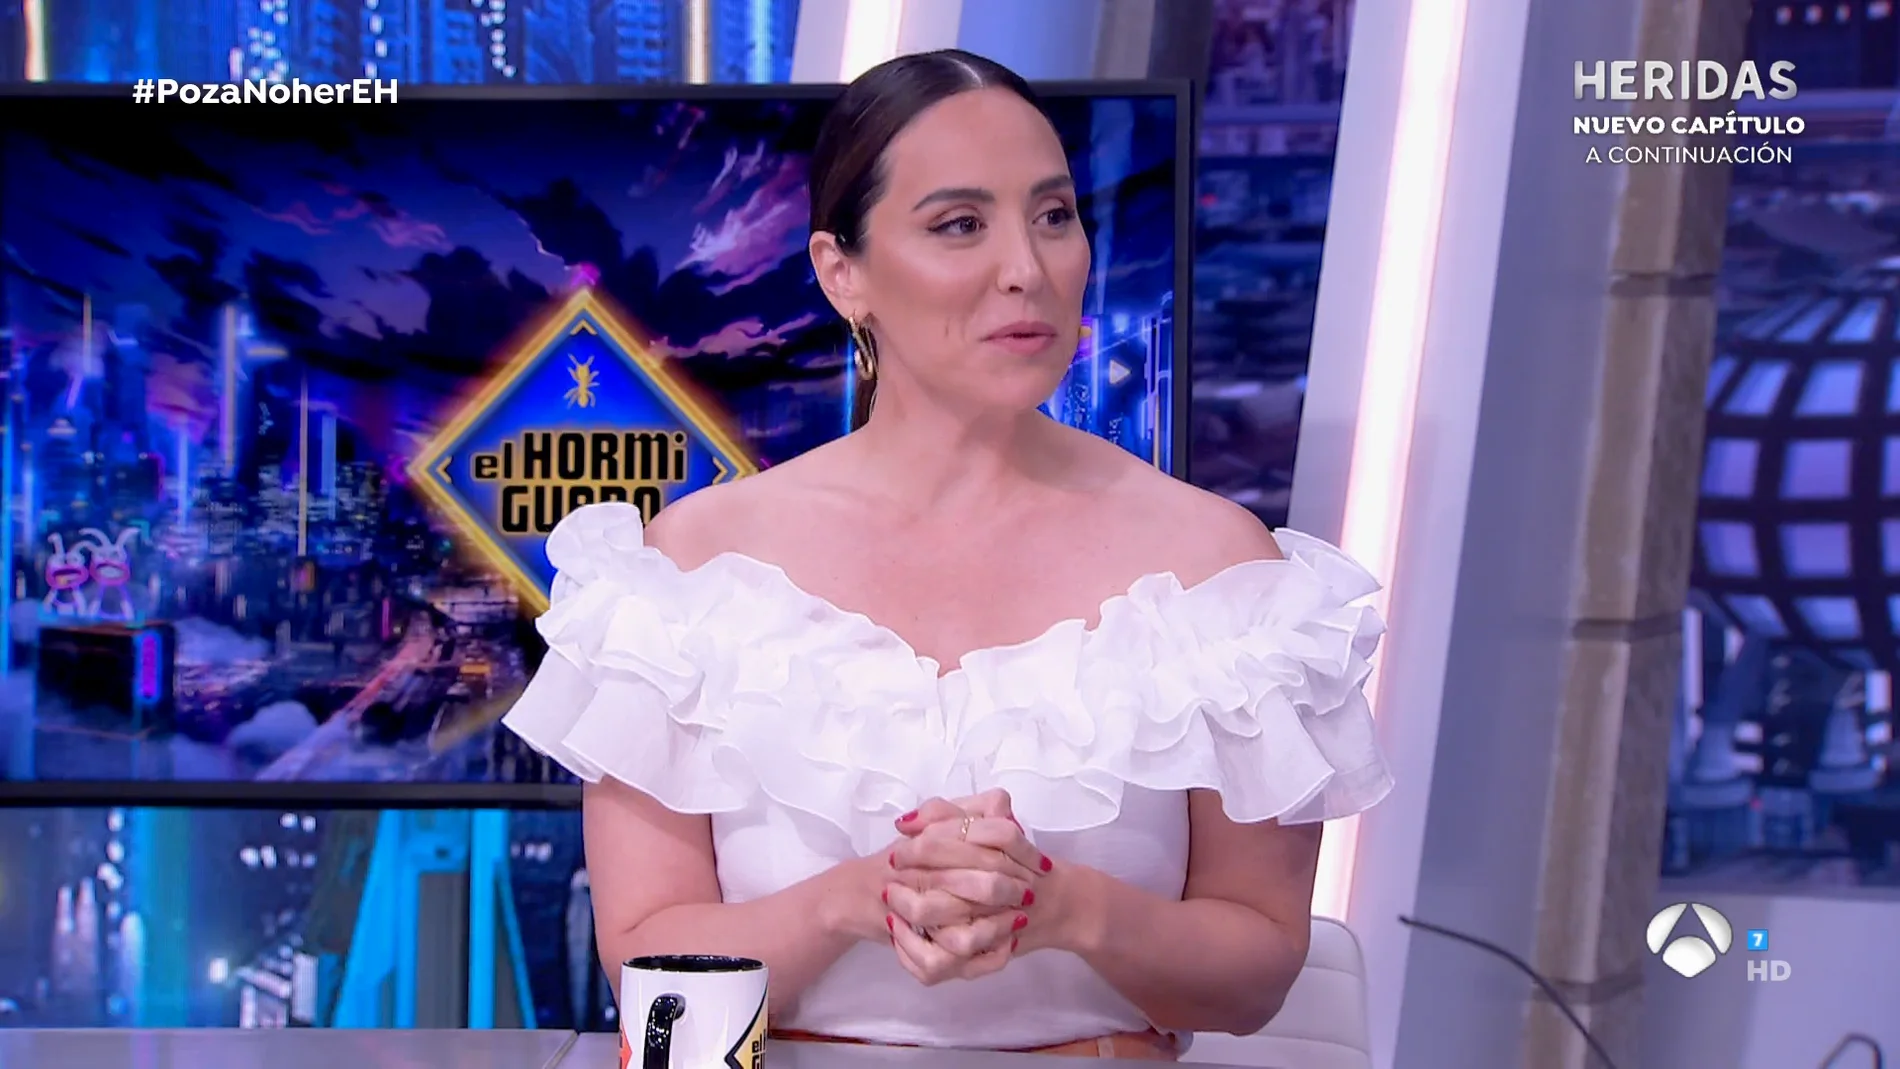 Tamara Falcó confiesa toda la verdad sobre su vestido de novia: "Fue todo muy desagradable"